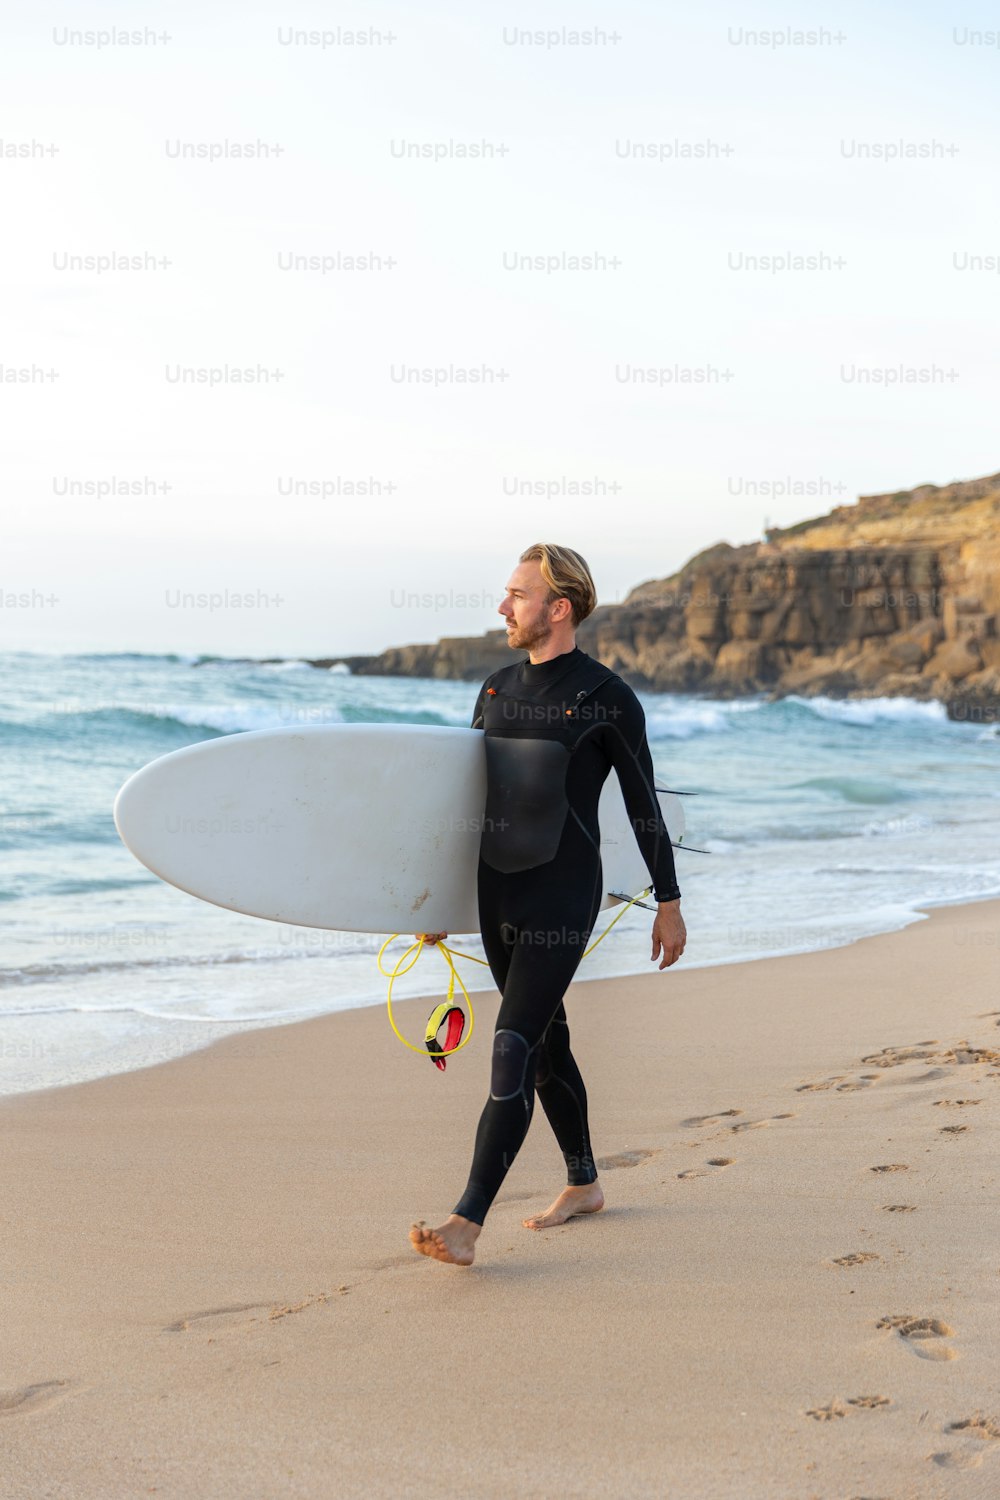 ��해변에서 서핑보드를 들고 있는 잠수복을 입은 남자